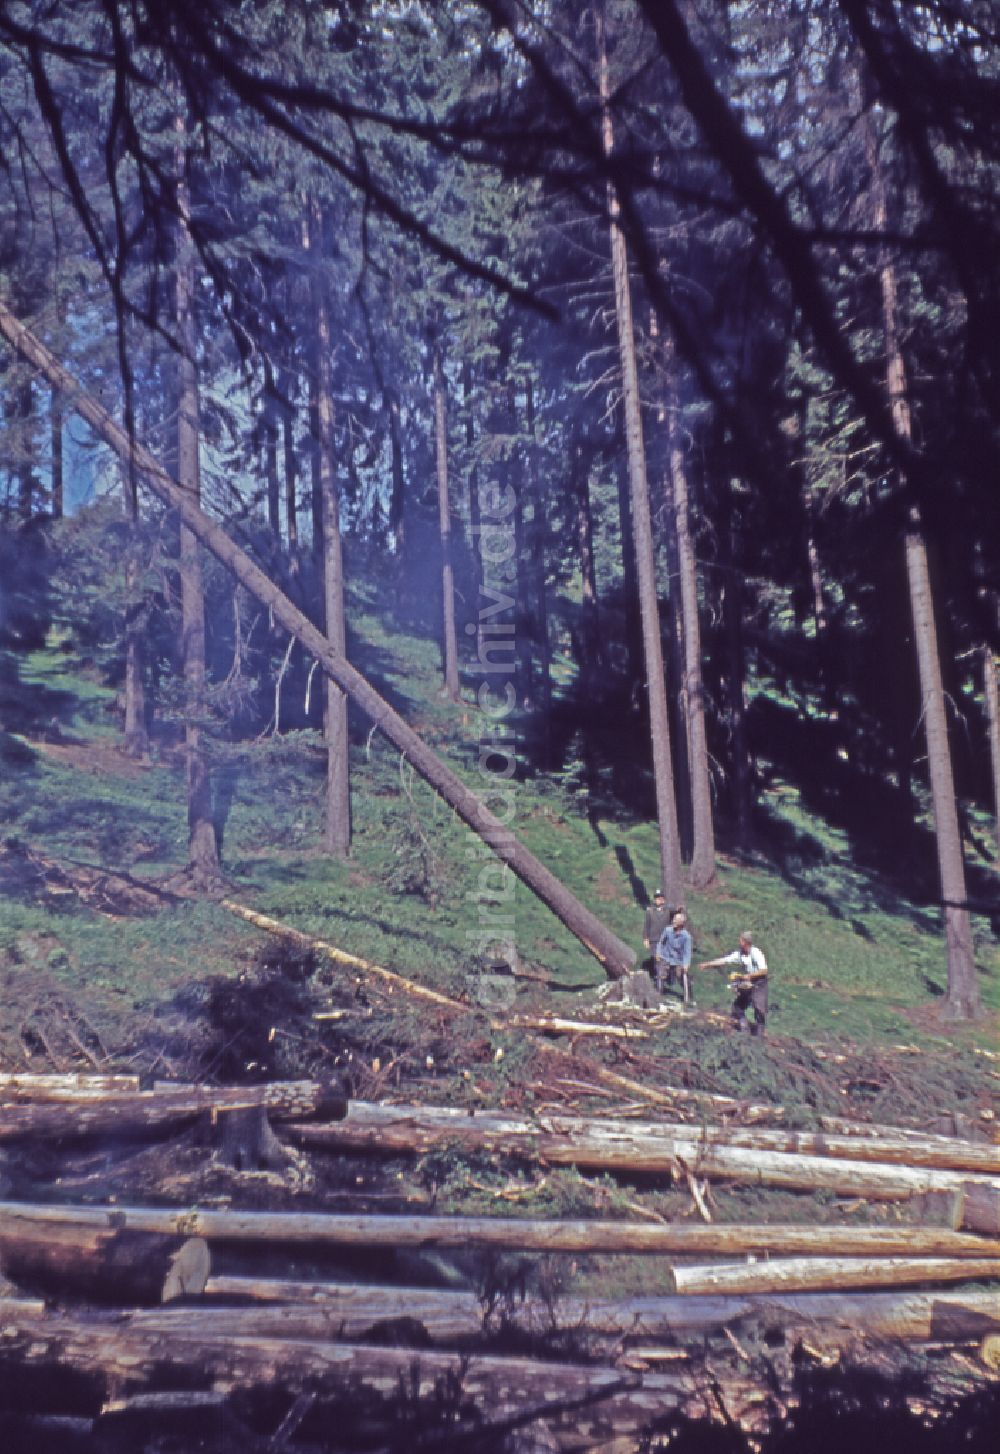 DDR-Bildarchiv: Suhl - Baumfällarbeiten in einem Wald bei Suhl in der DDR